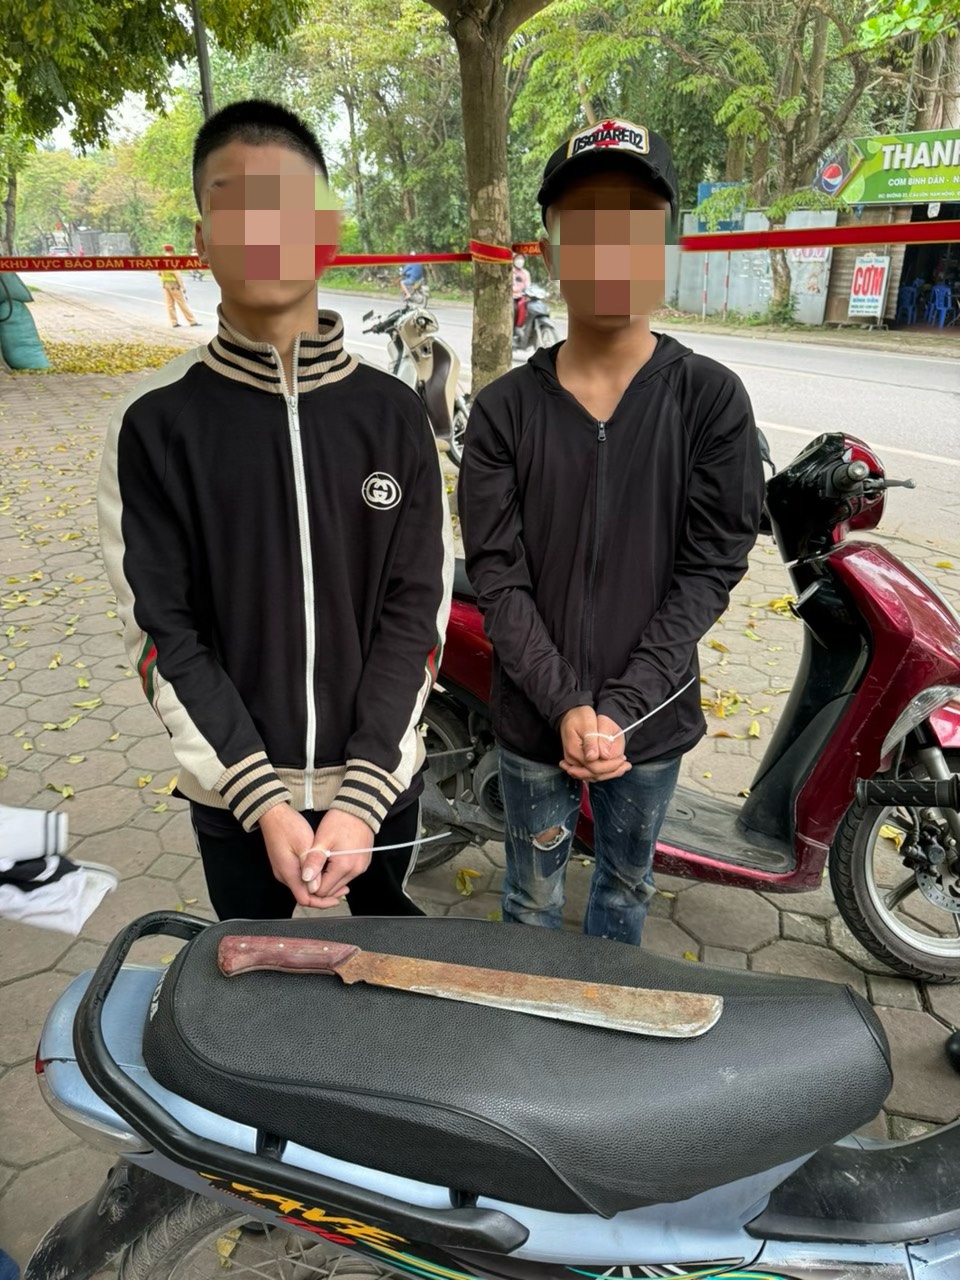 Kiểm tra trên đường, Cảnh sát 141 Hà Nội kịp ngăn chặn vụ thiếu niên mang dao giải quyết mâu thuẫn - Ảnh 2.